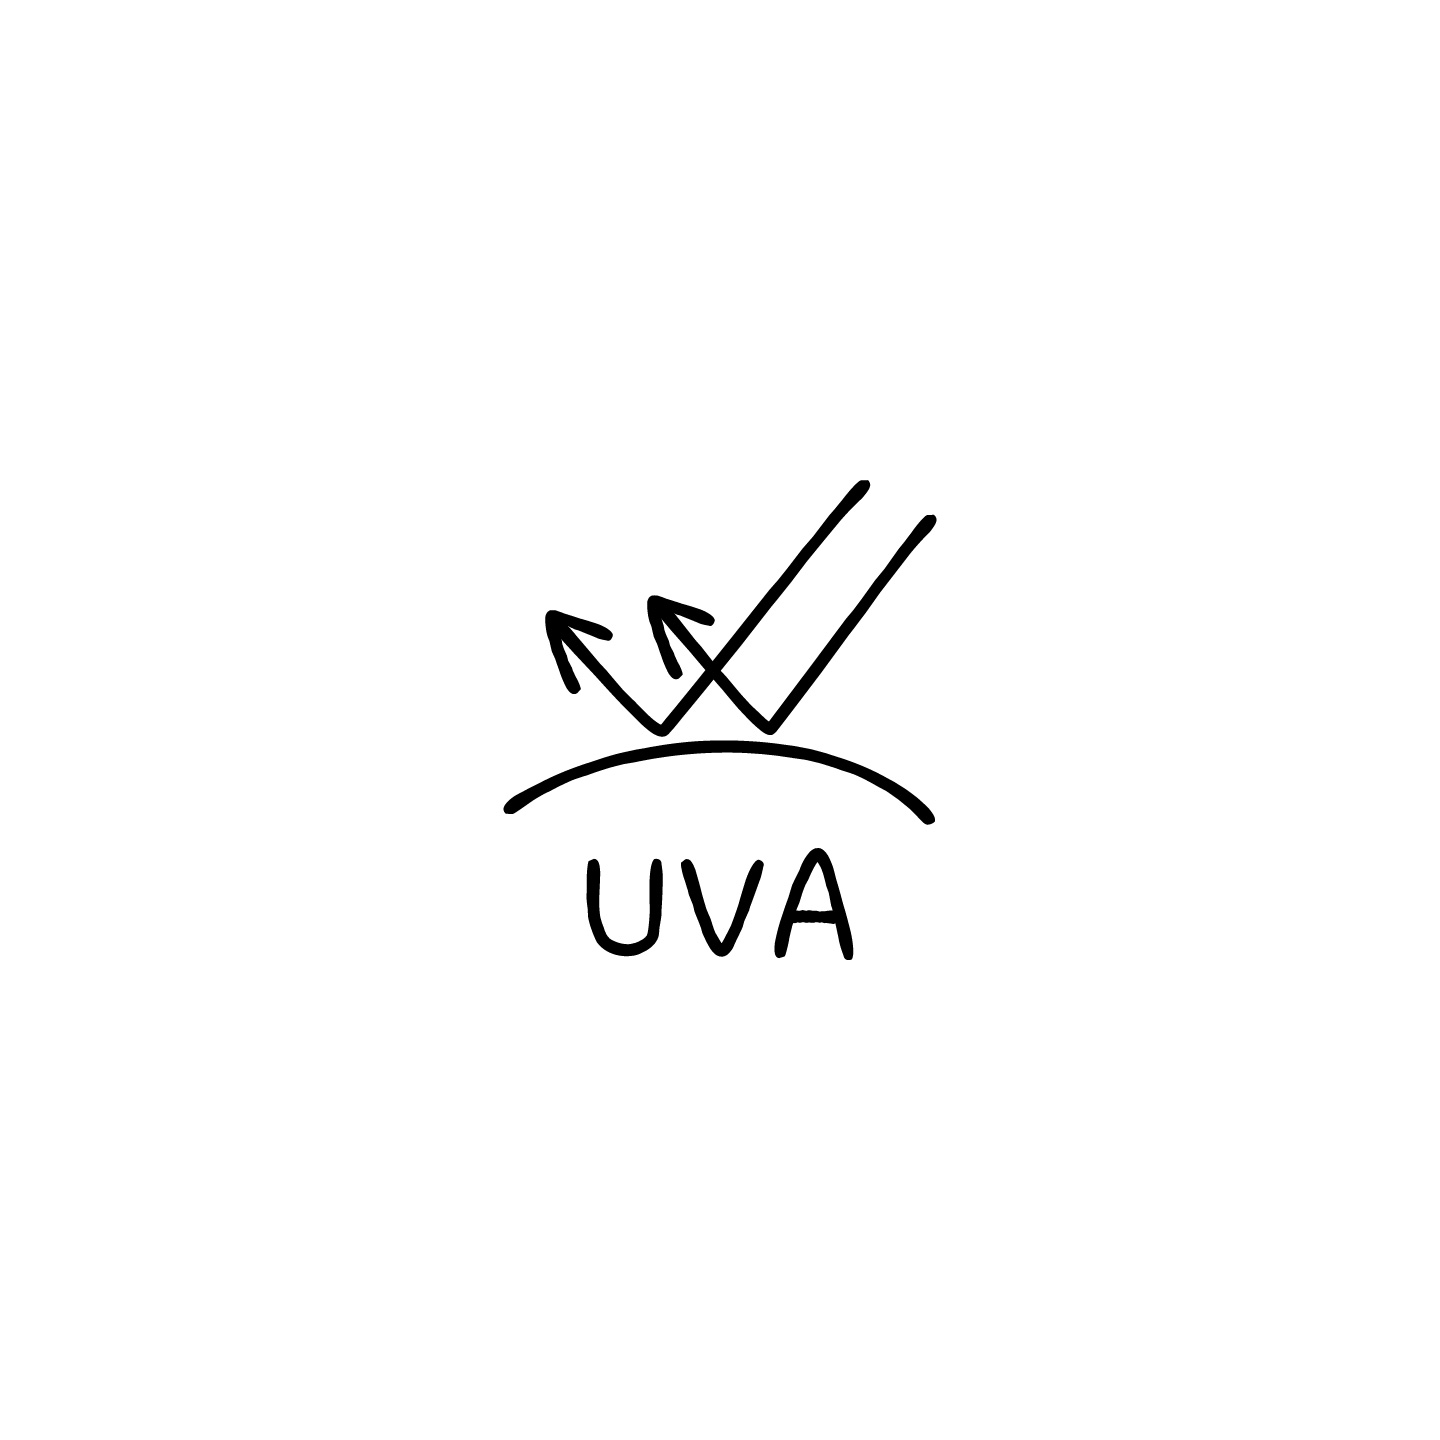 UVカットUVAのアイコンのアイキャッチ用画像